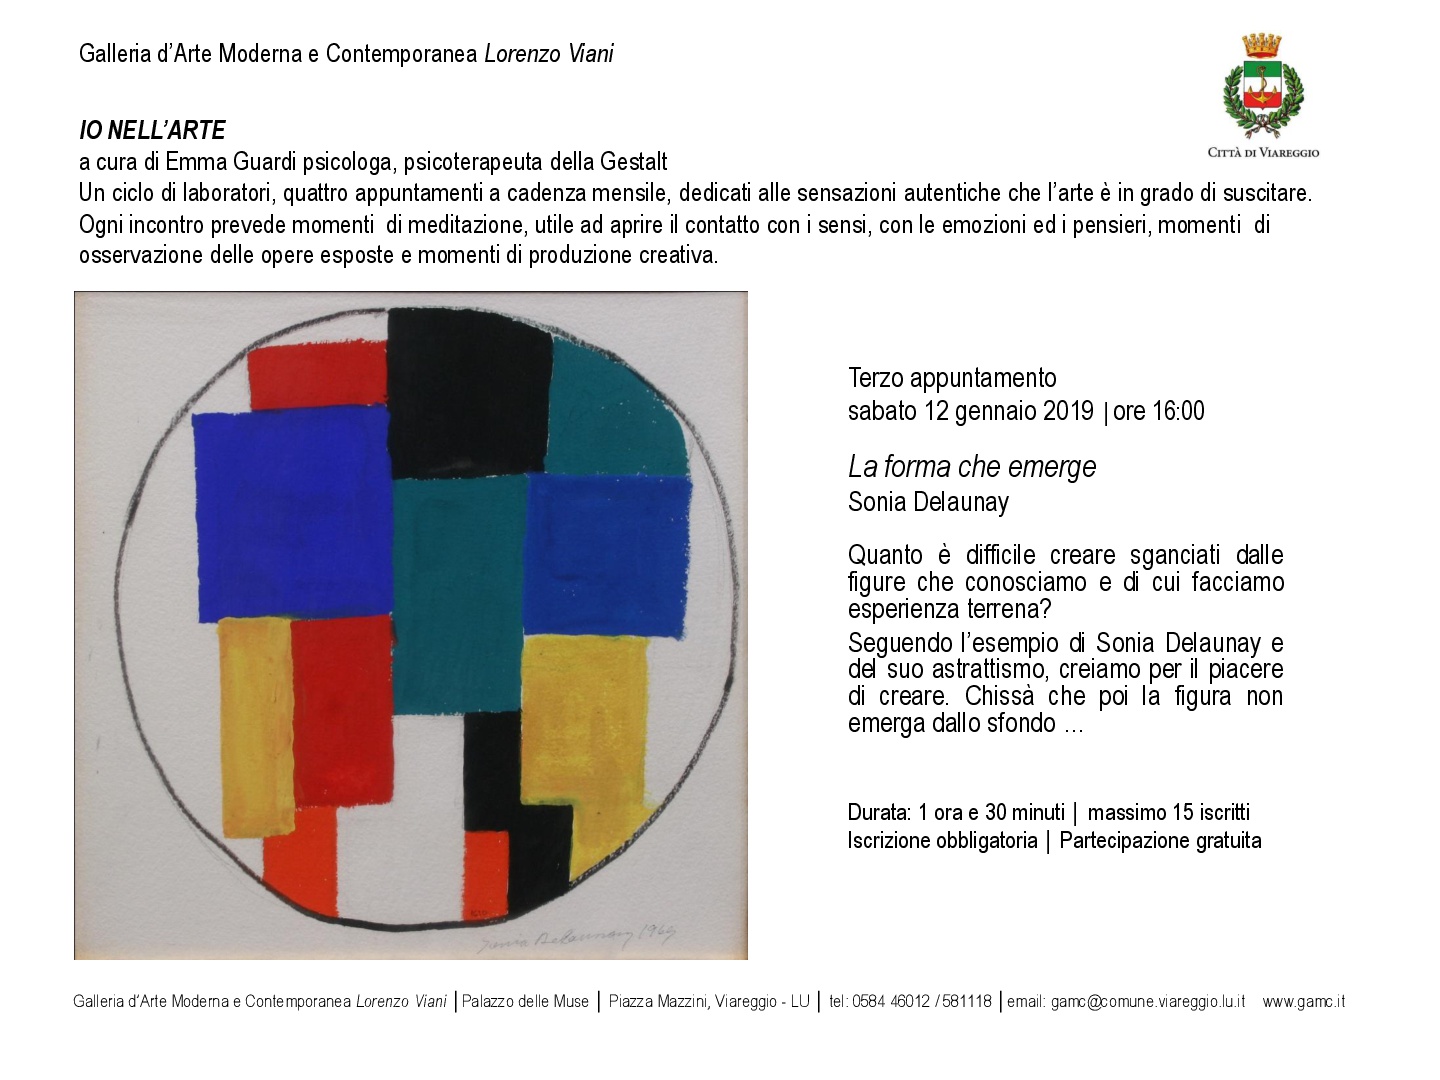 GAMC - Galleria di Arte Moderna - Mostra : Progetto IO NELL ARTE. III appuntamento: LA FORMA CHE EMERGE, immagine